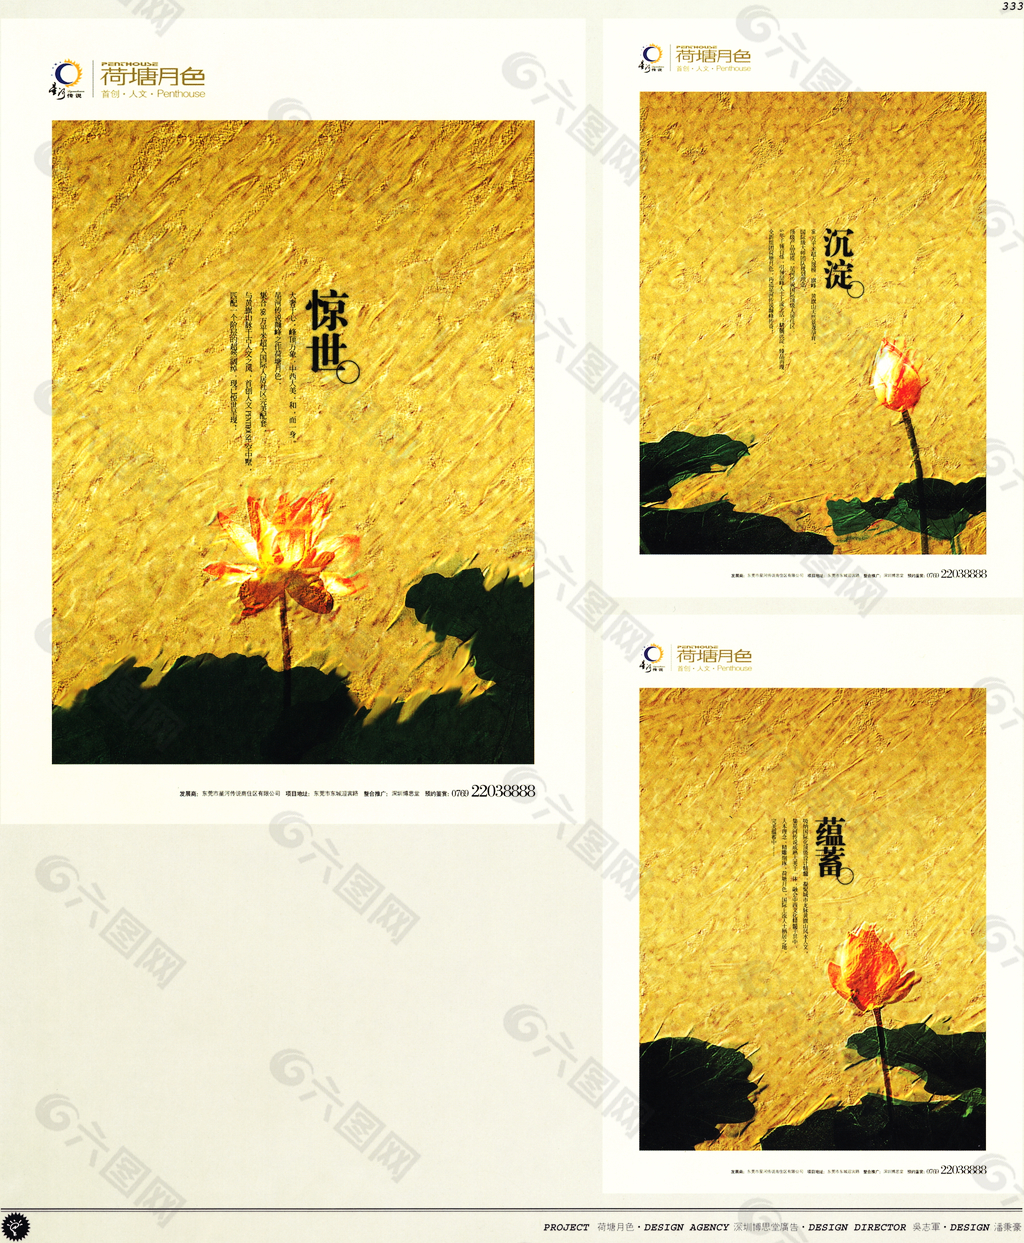 中国房地产广告年鉴 第二册 创意设计_0315